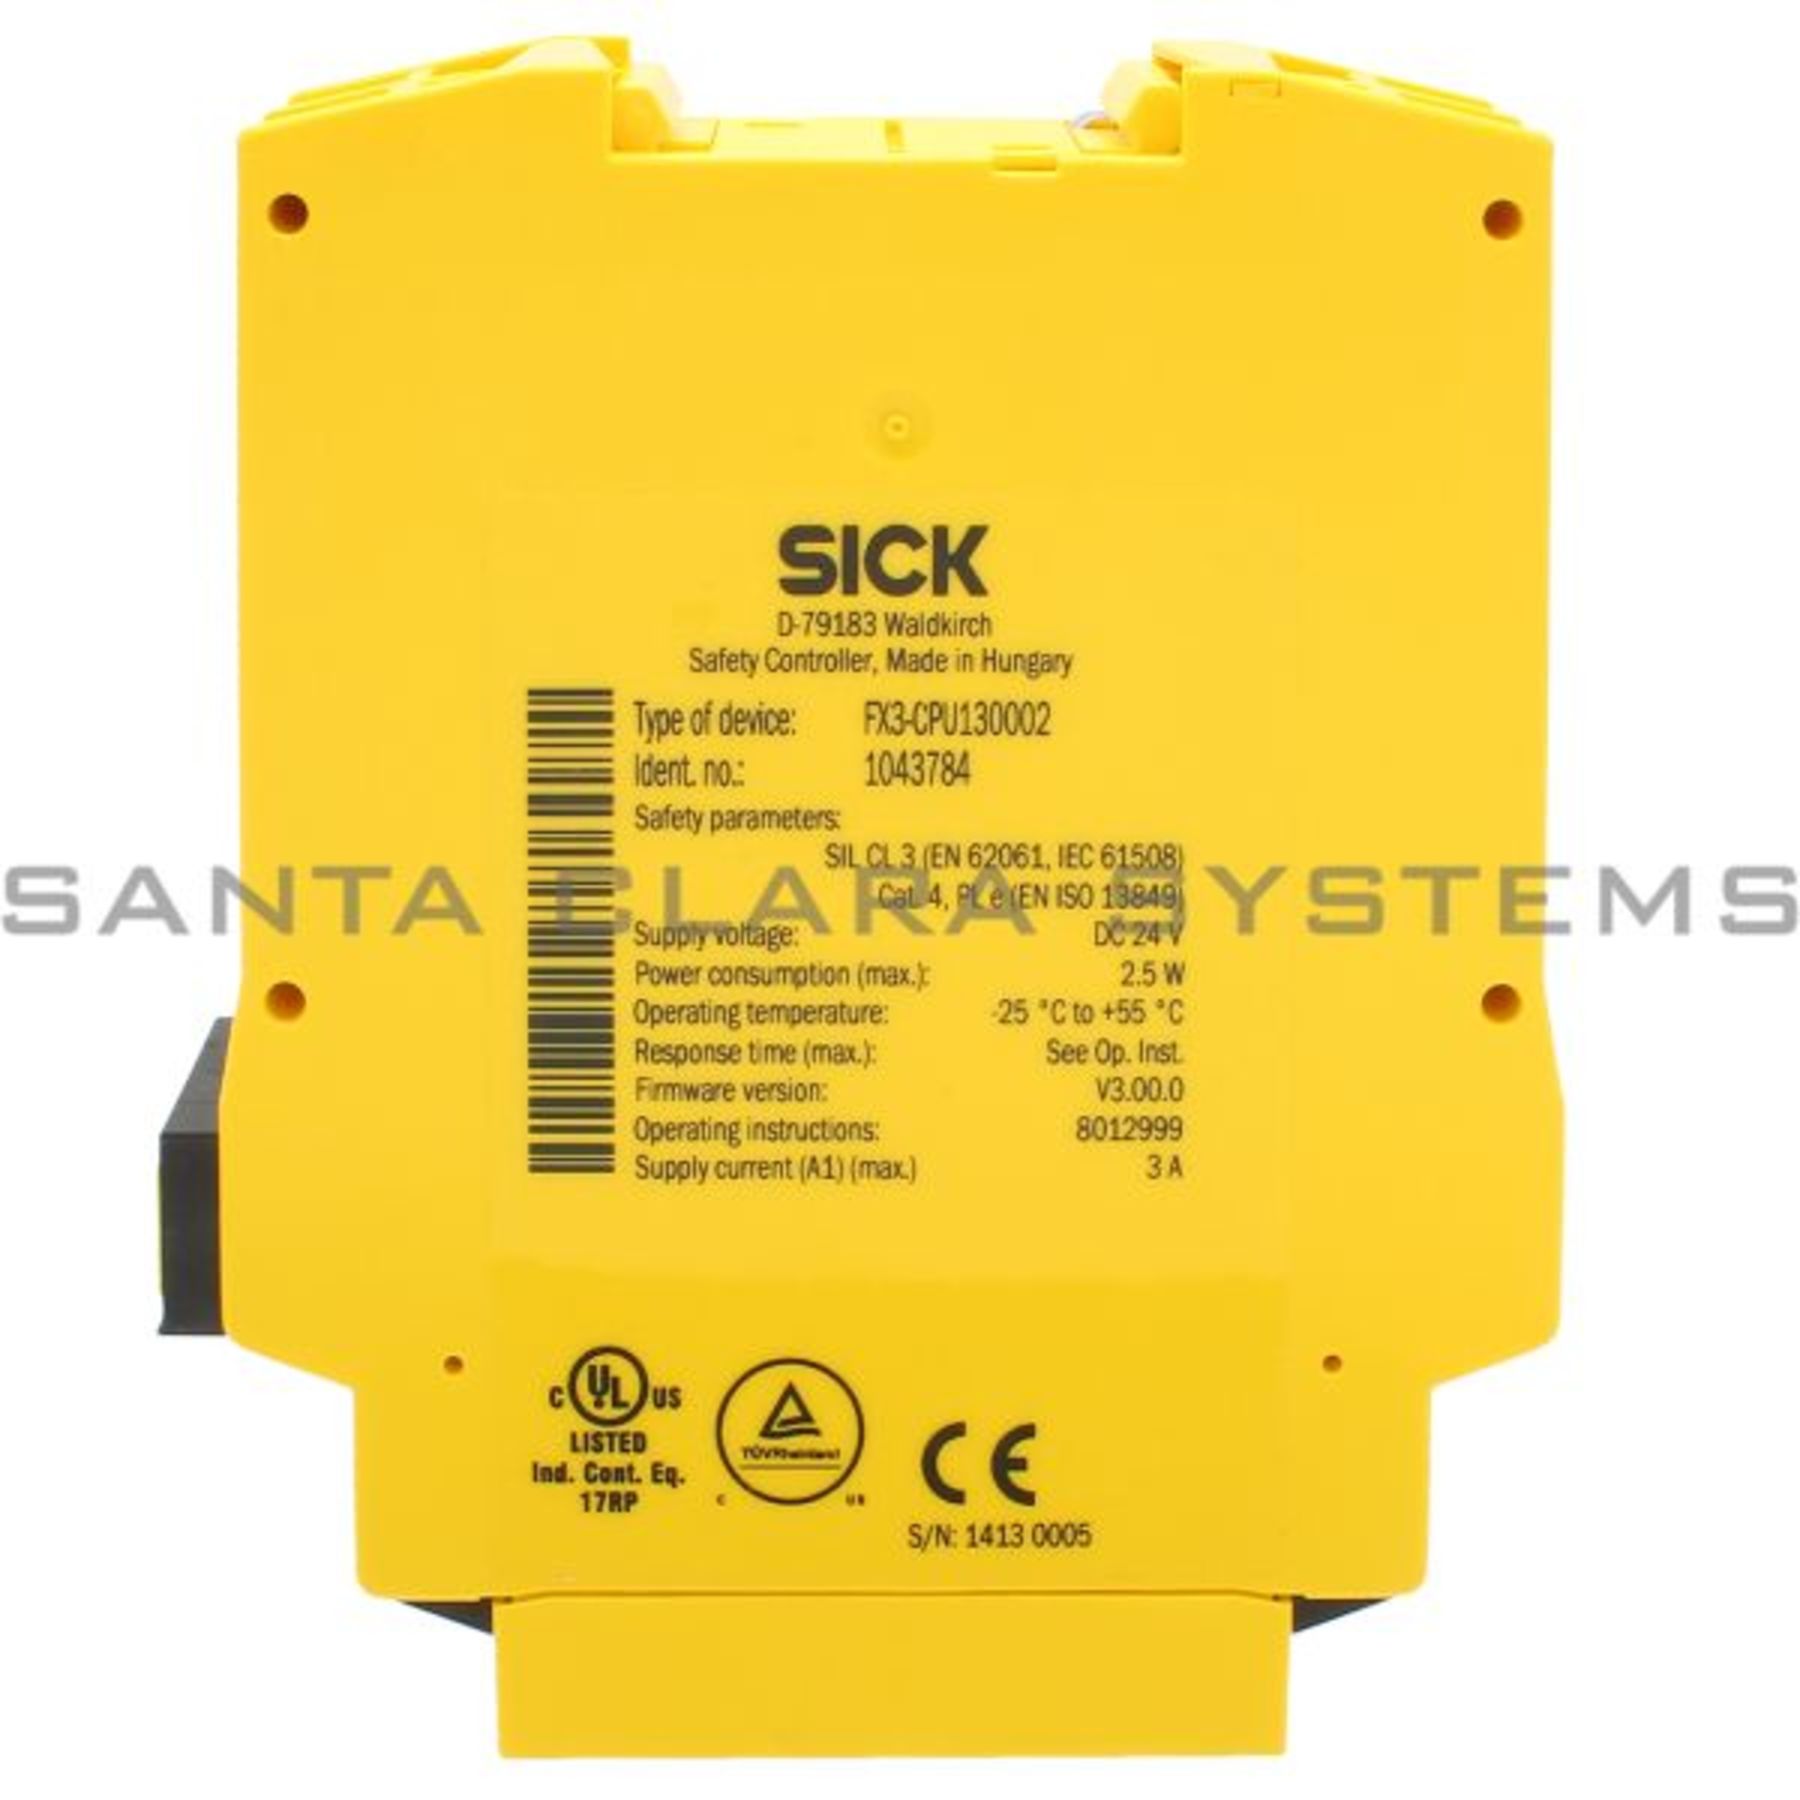 FX3-CPU130002 Sick Safety Controller - Santa Clara Systems